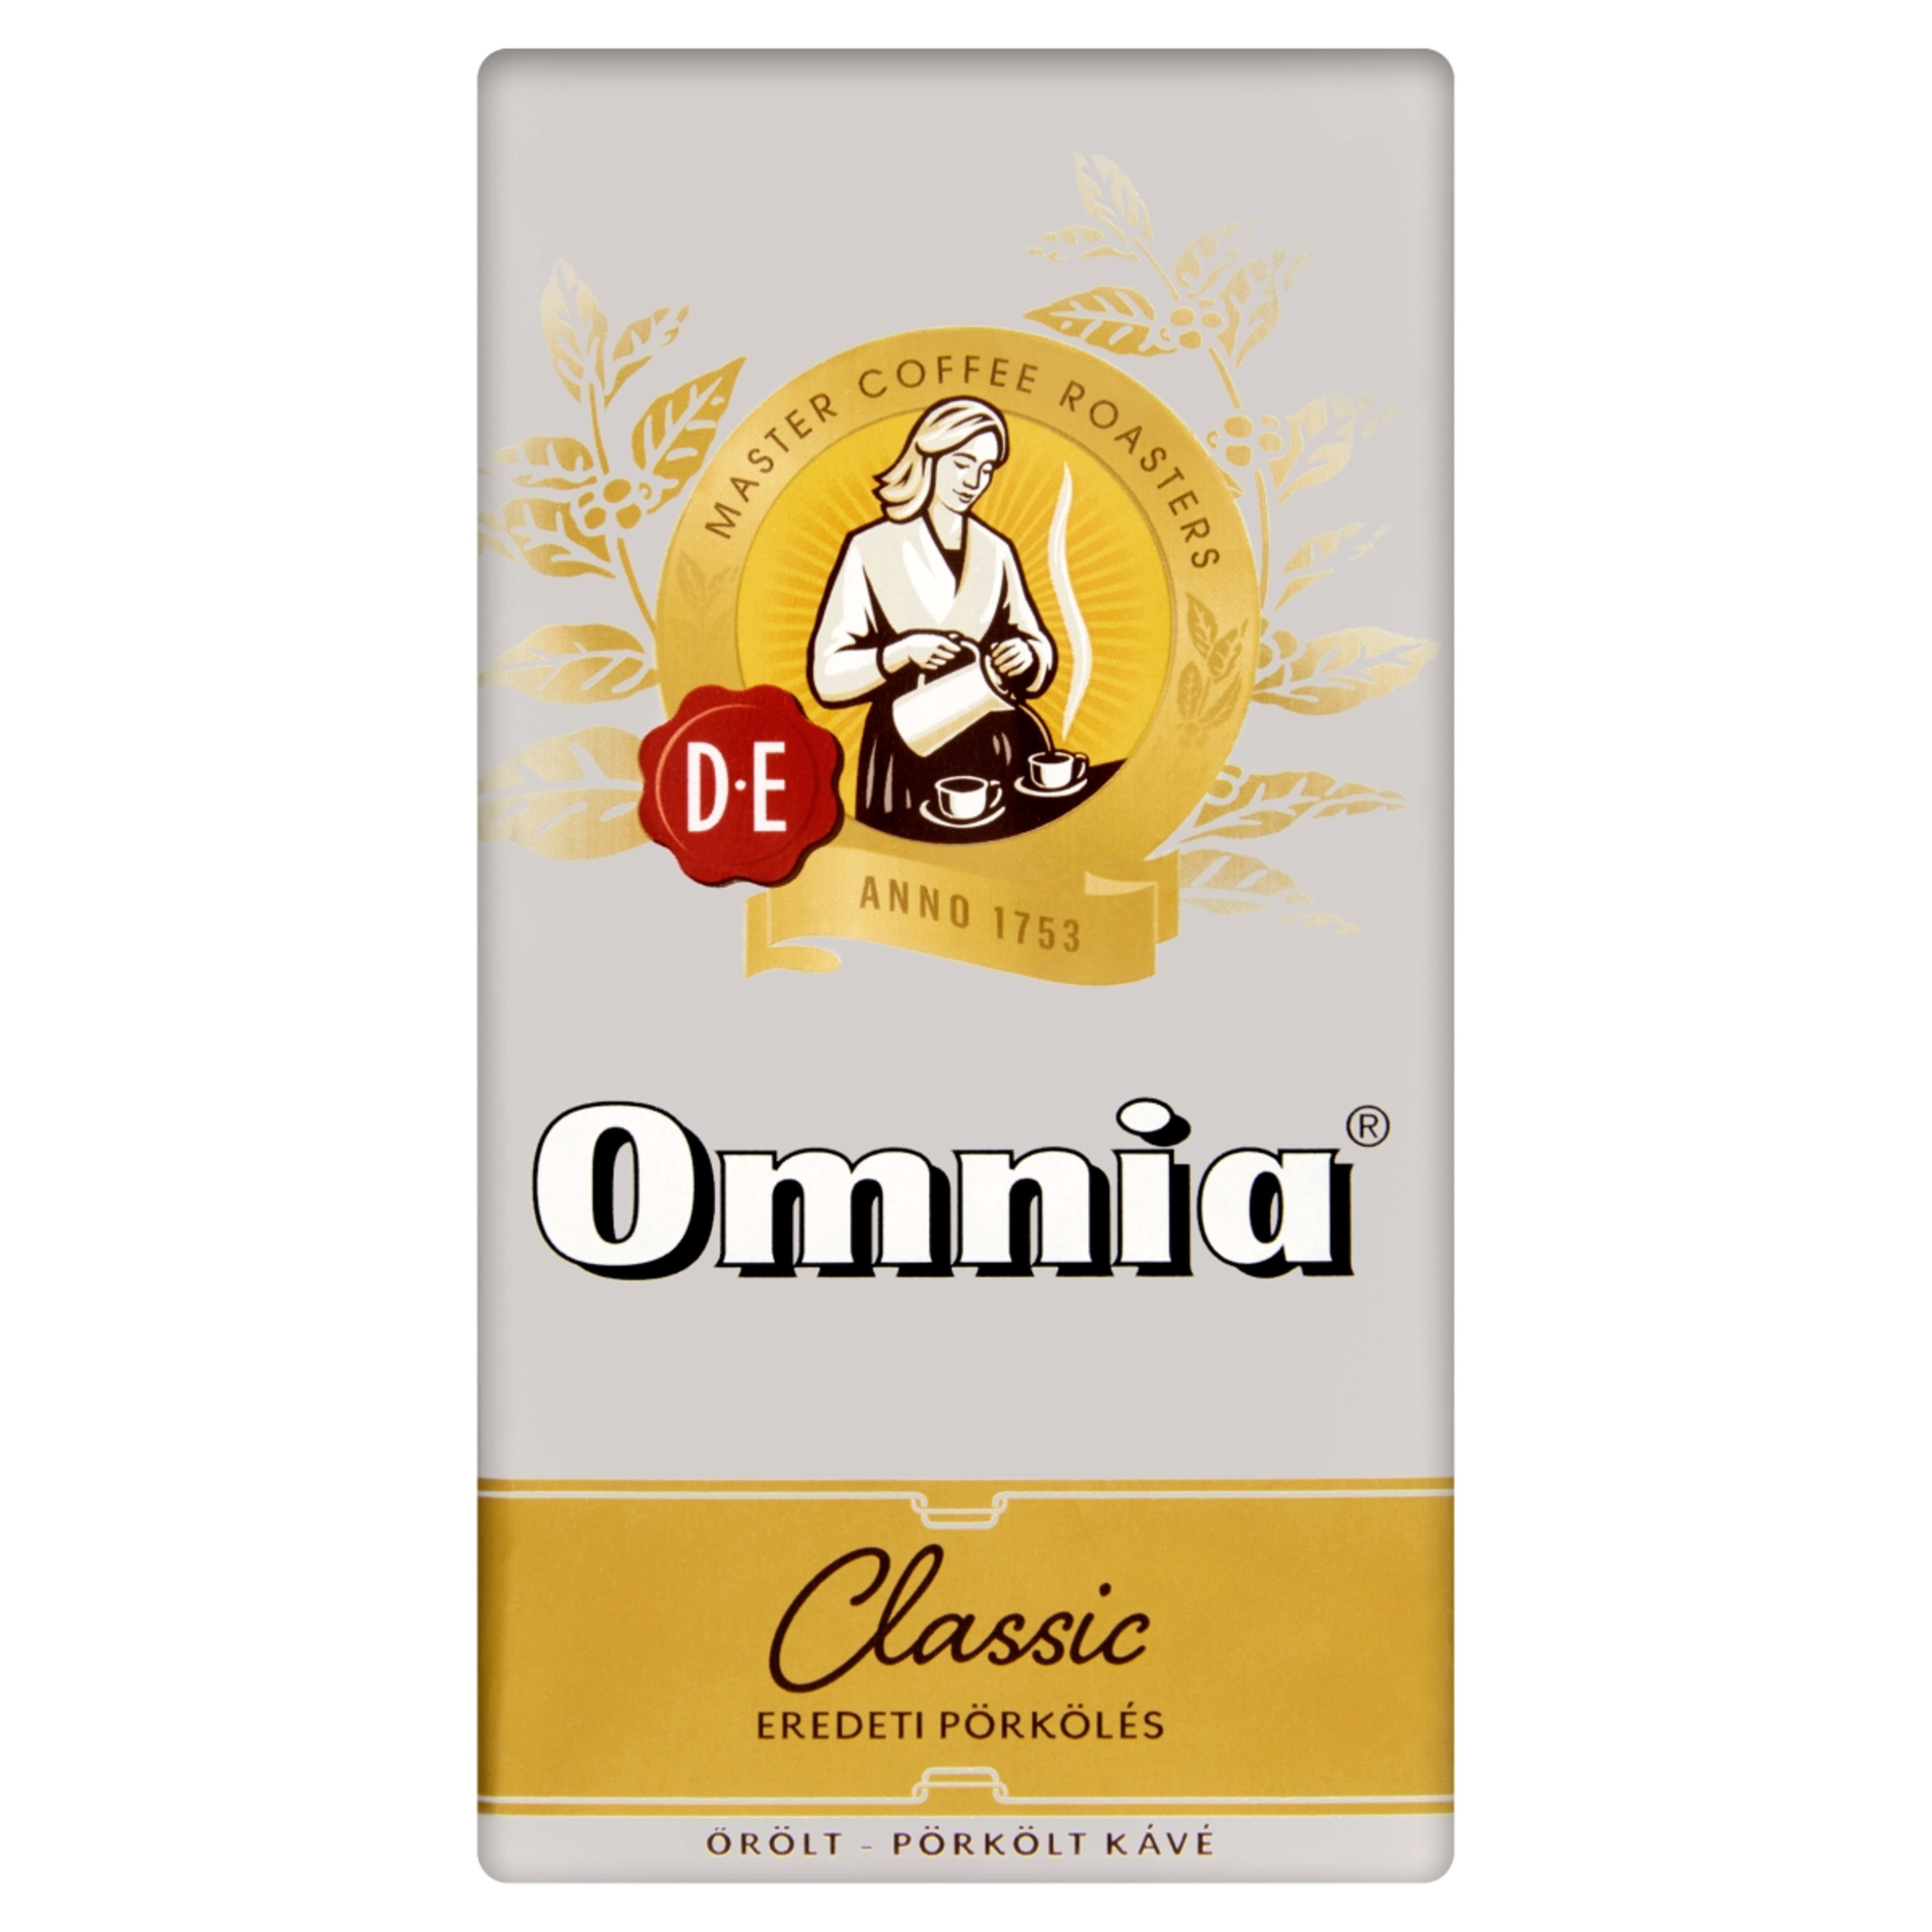 Douwe Egberts Omnia Classic eredeti pörkölésű kávé - 250 g